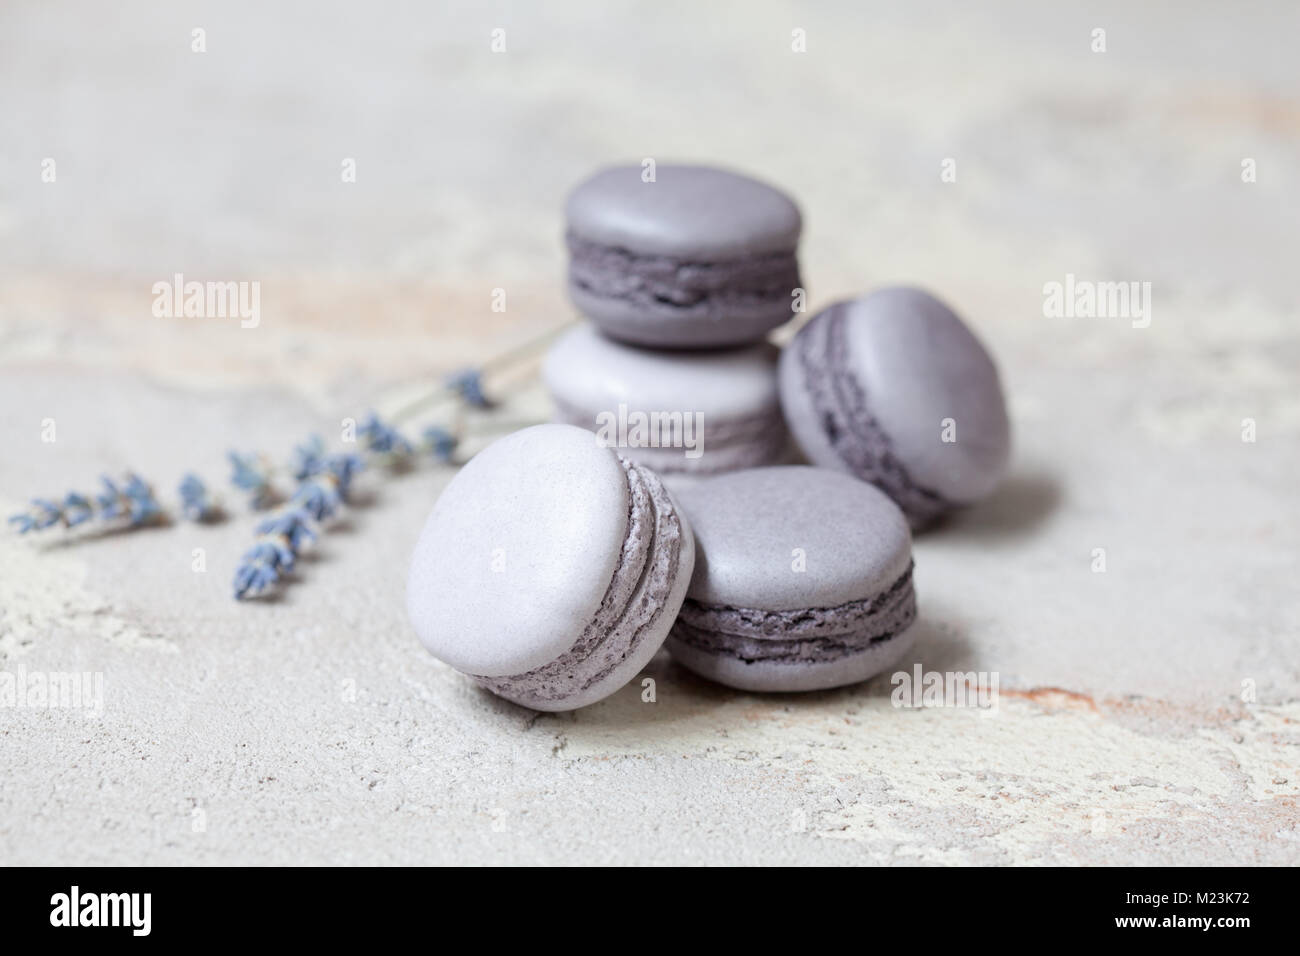 Macaron macaron ou gris Monochrome sur fond de béton, biscuits aux amandes avec différents matériaux (chocolat, caramel). Selective focus Banque D'Images